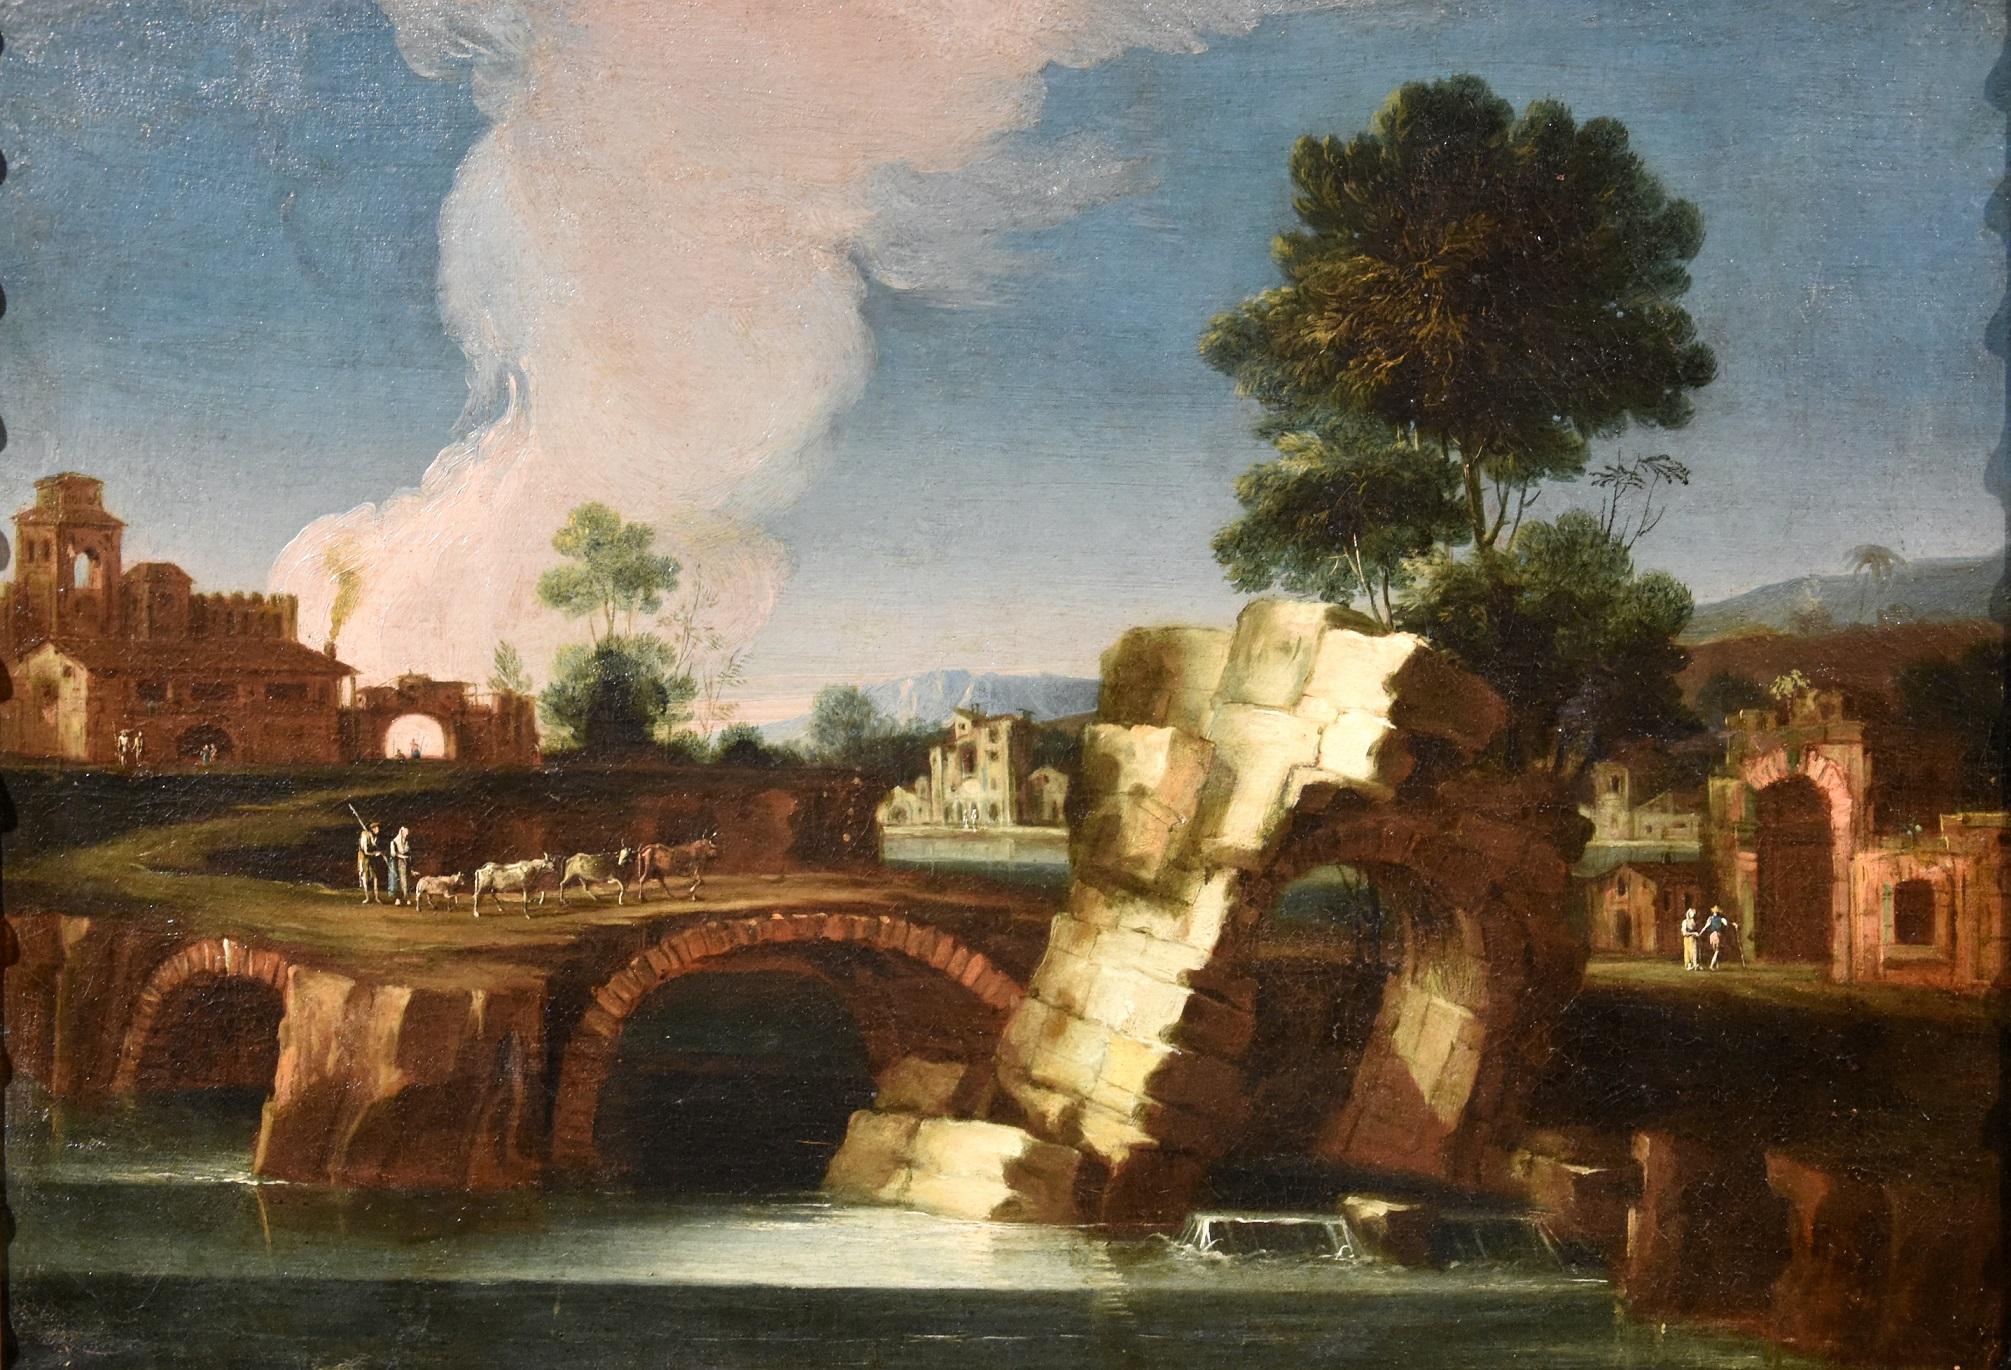 Landschaftsmalerei, Öl auf Leinwand, 18. Jahrhundert, Alter Meister Roma, Italien, Fluss-Wasserkunst